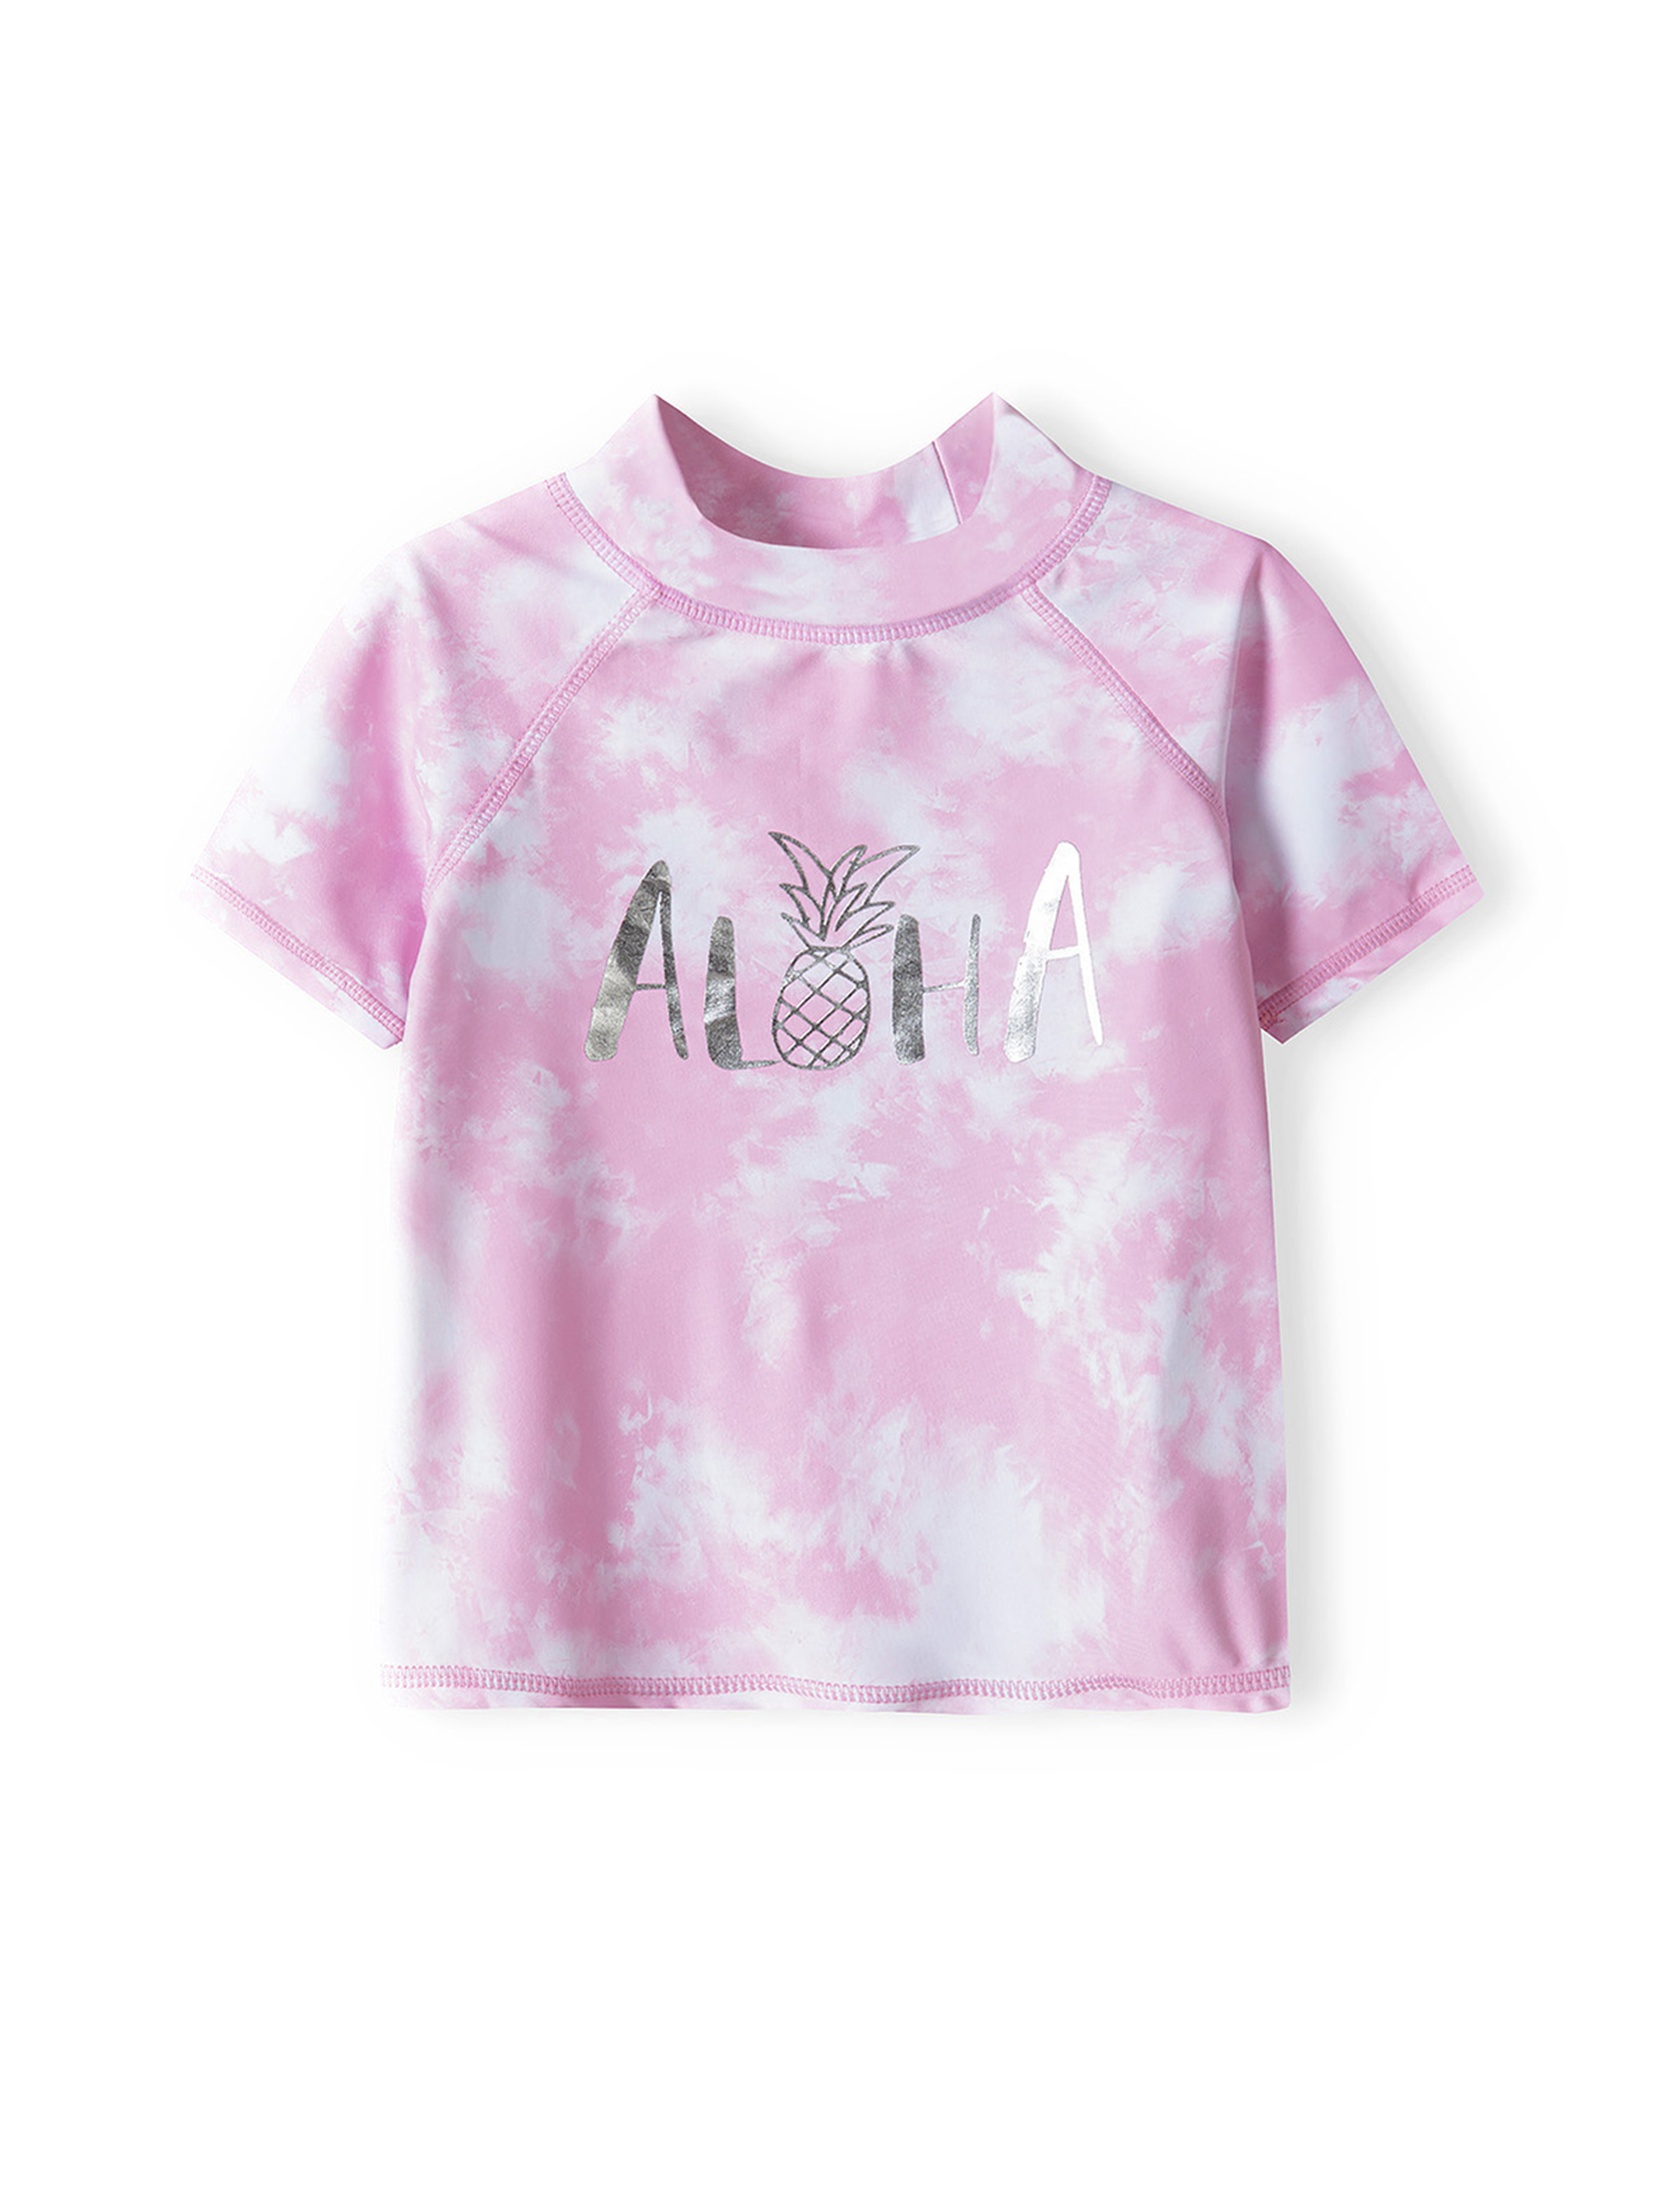 Kąpielowy komplet- koszulka i majtki z filtrem UV z napisem "Aloha" dla dziewczynki